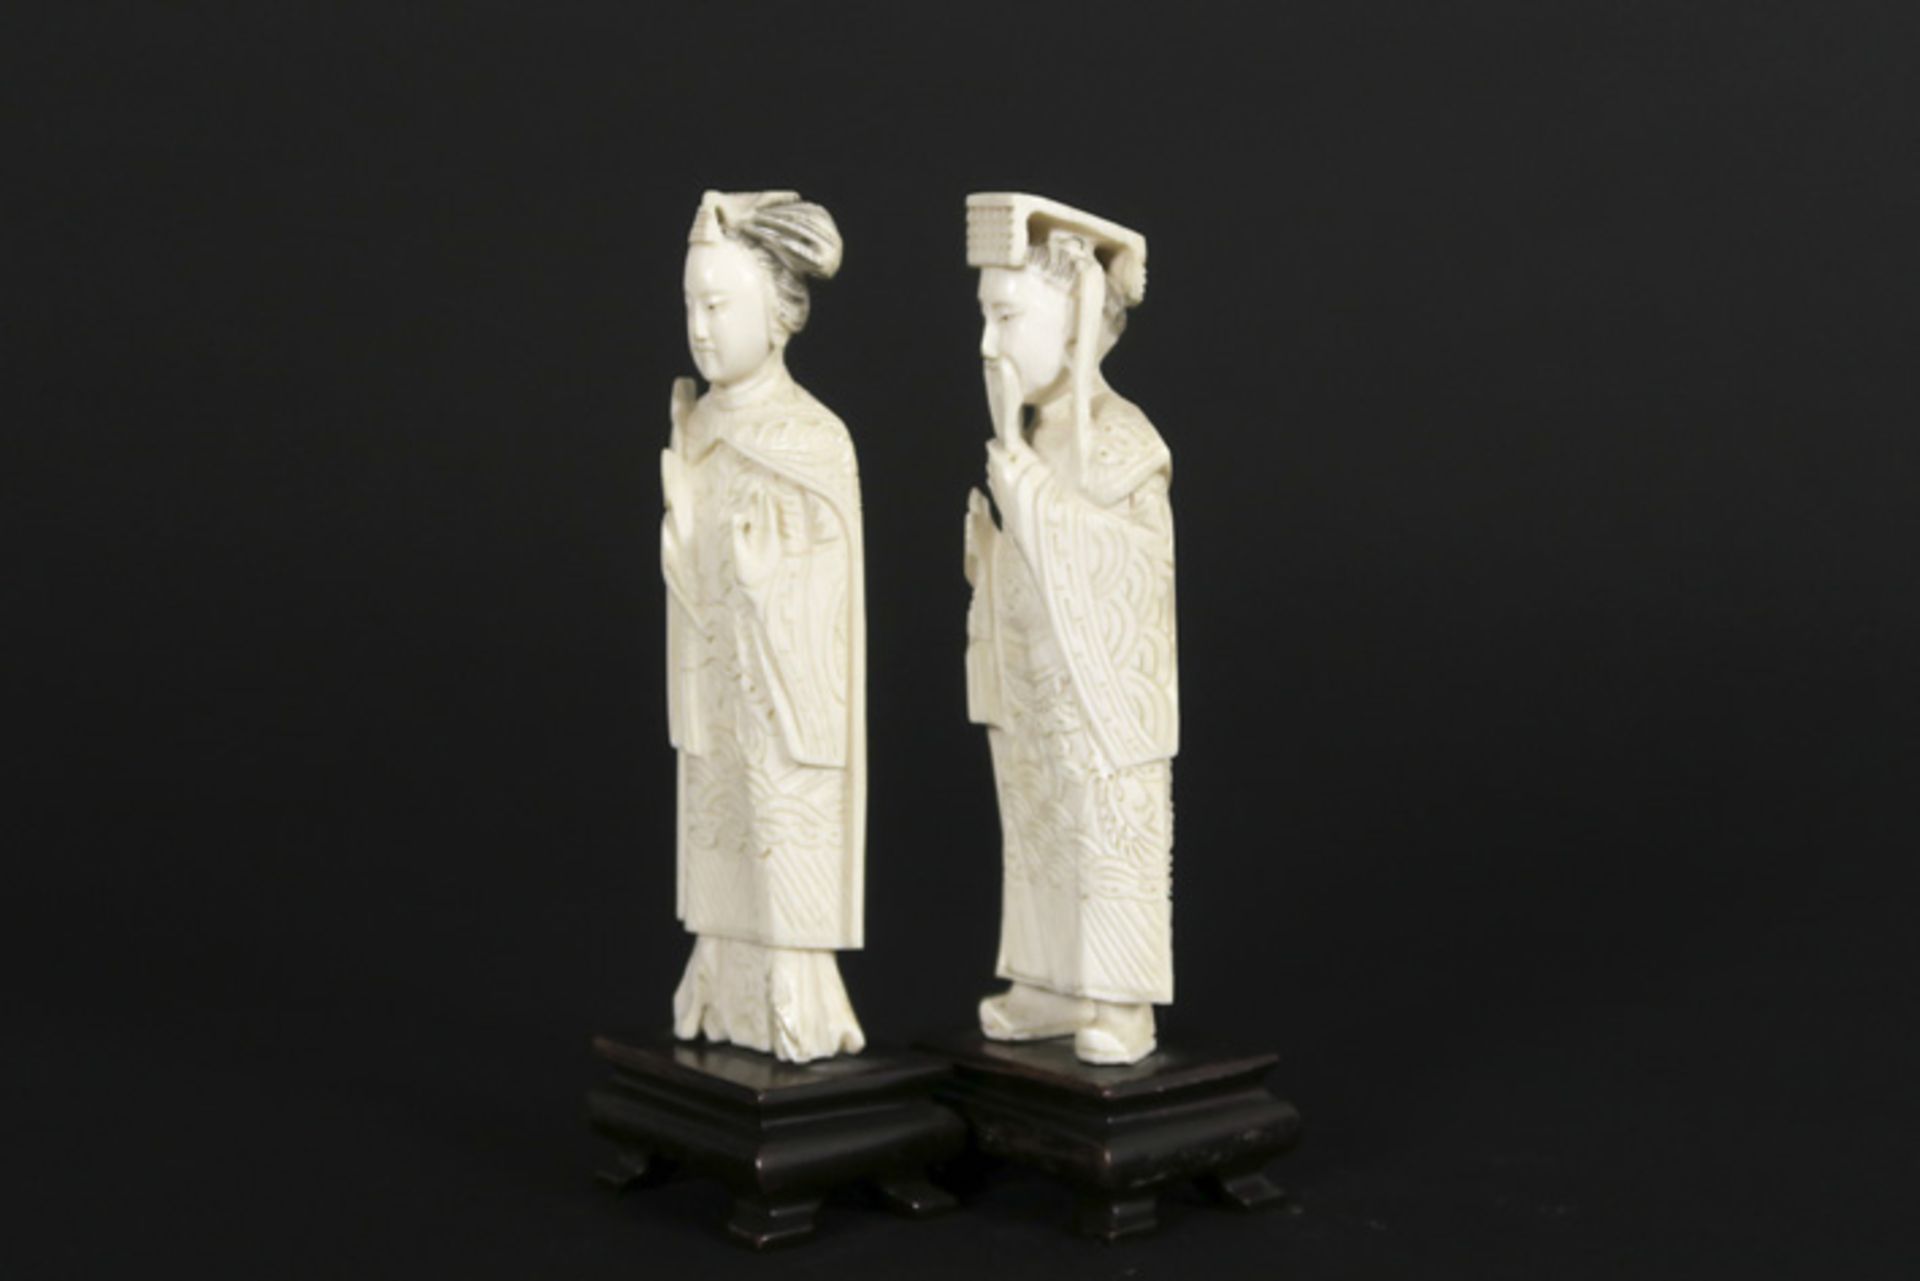 Paar kleine Chinese sculpturen in ivoor : "Keizer" en "Keizerin" - hoogtes : 12 en [...] - Bild 4 aus 4